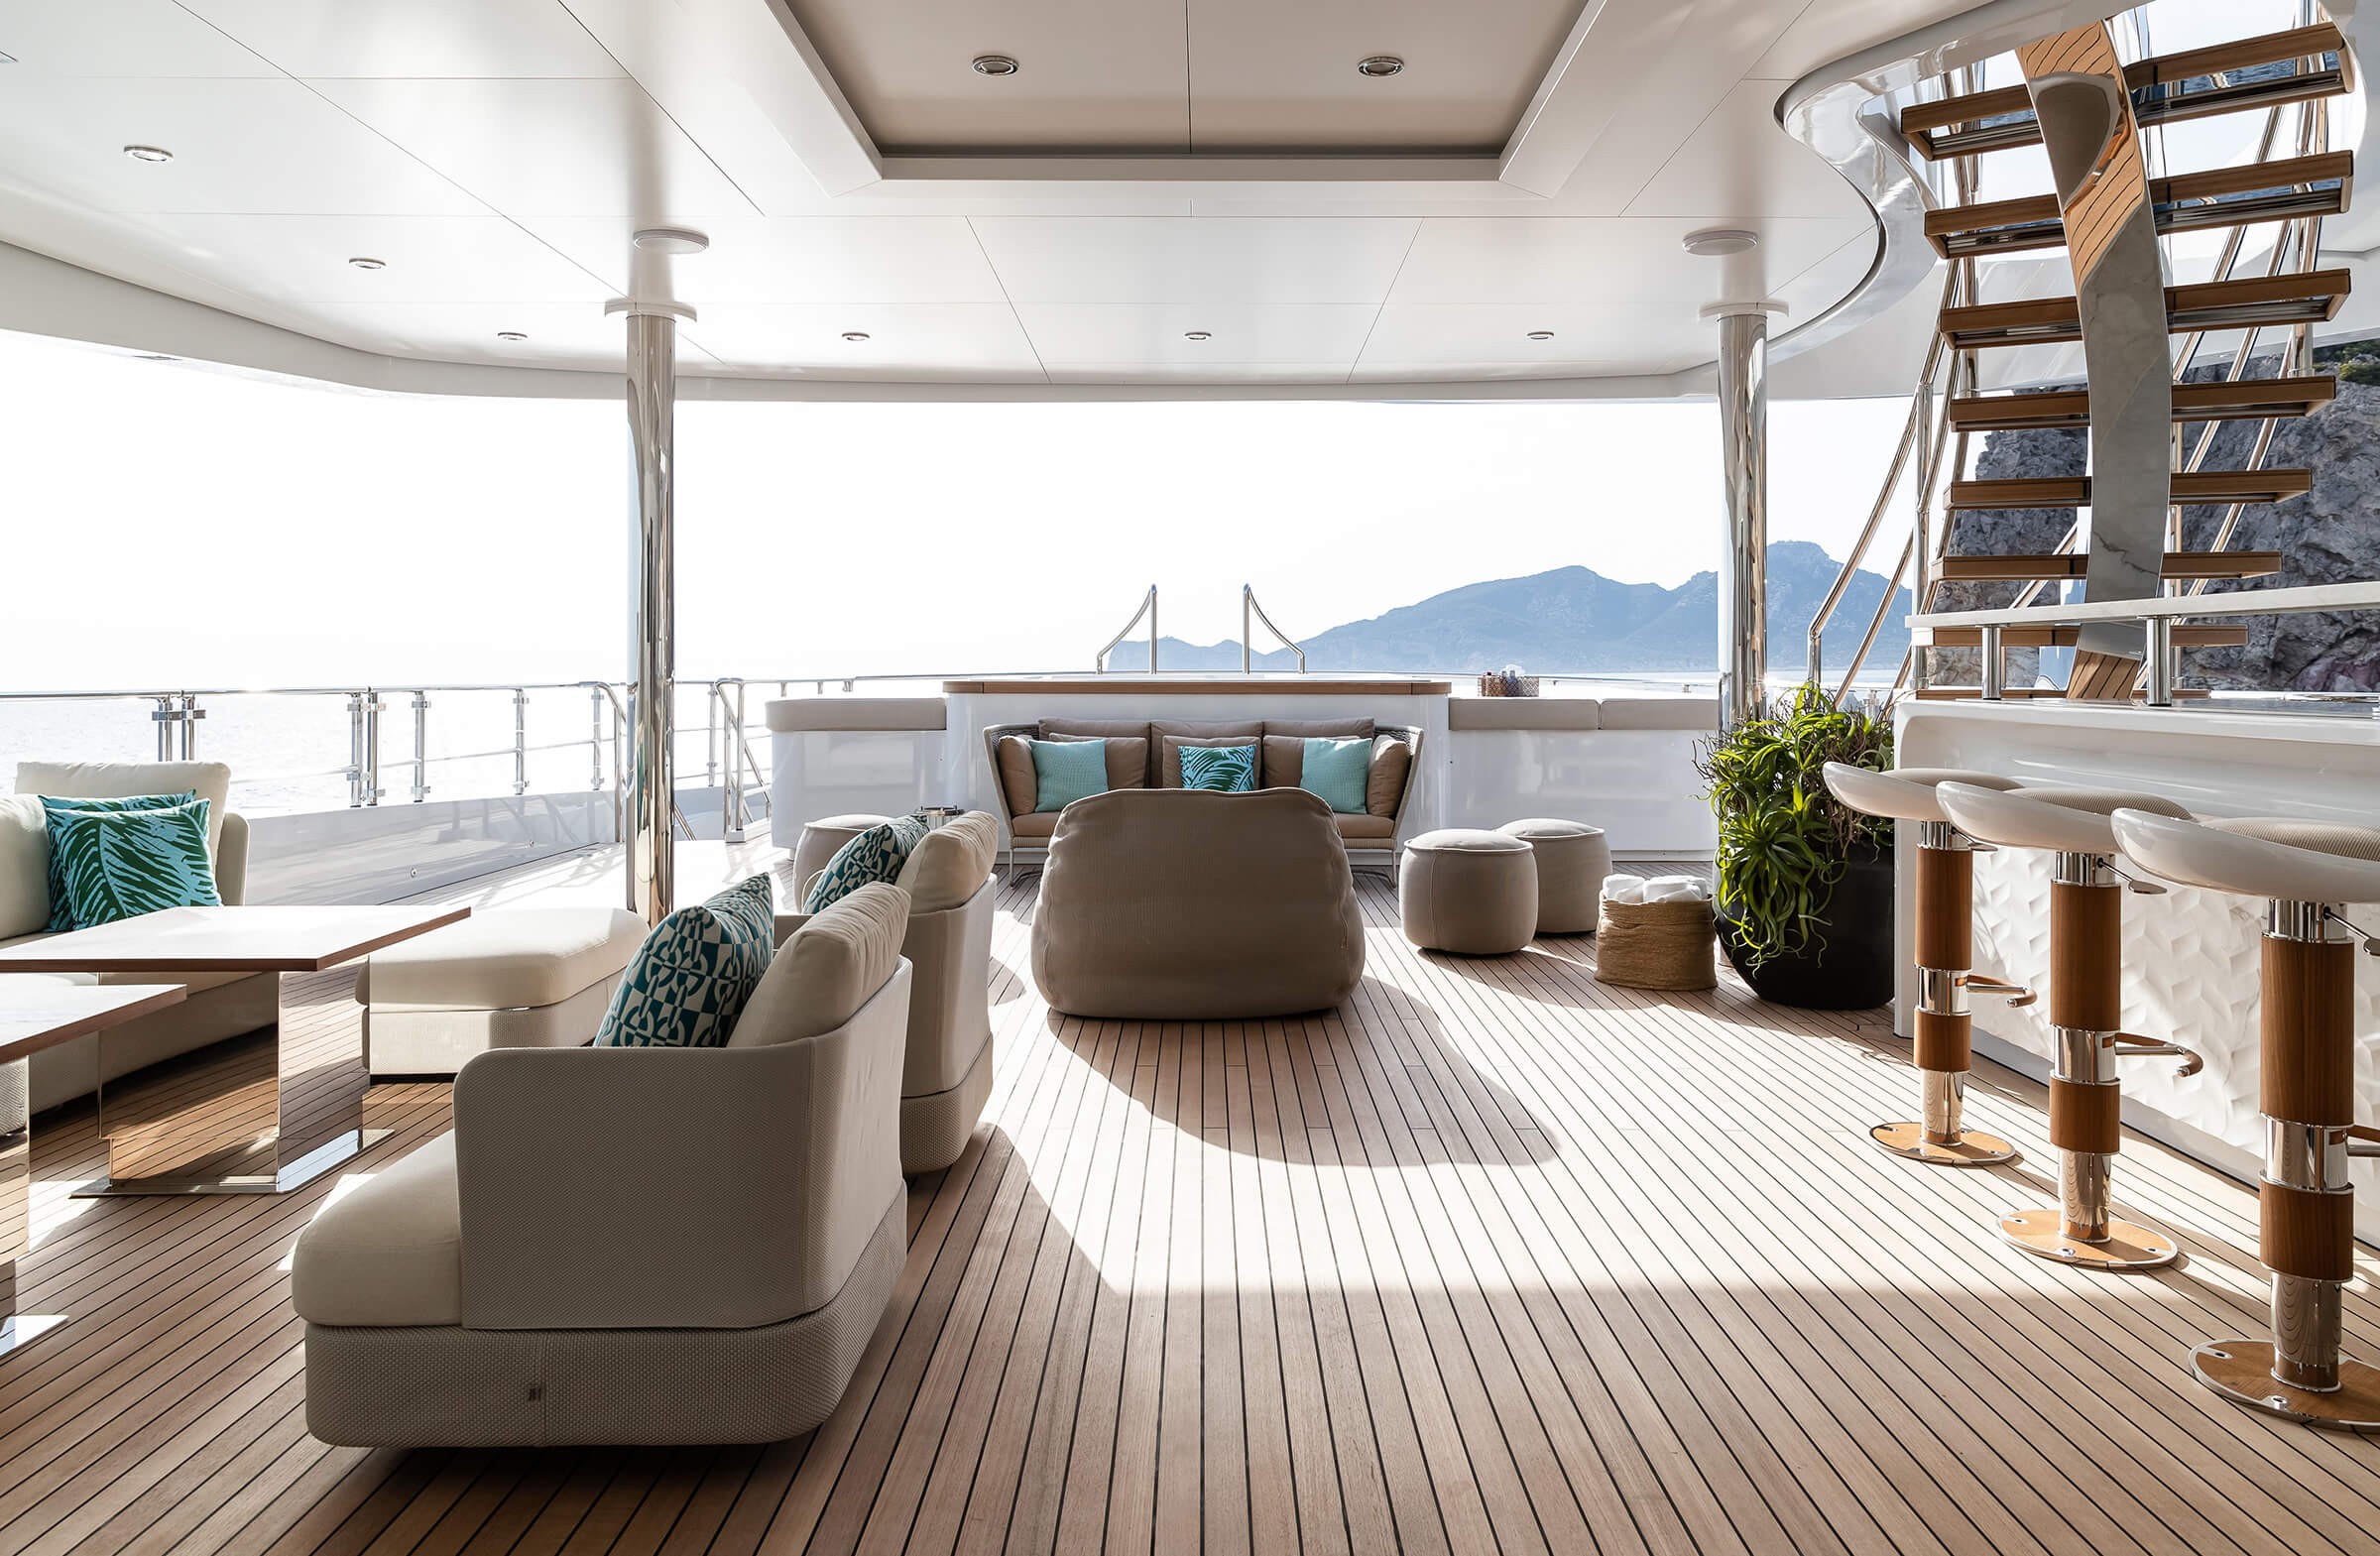 German Billionaire Sells His Award-Winning Luxury Benetti Superyacht ...